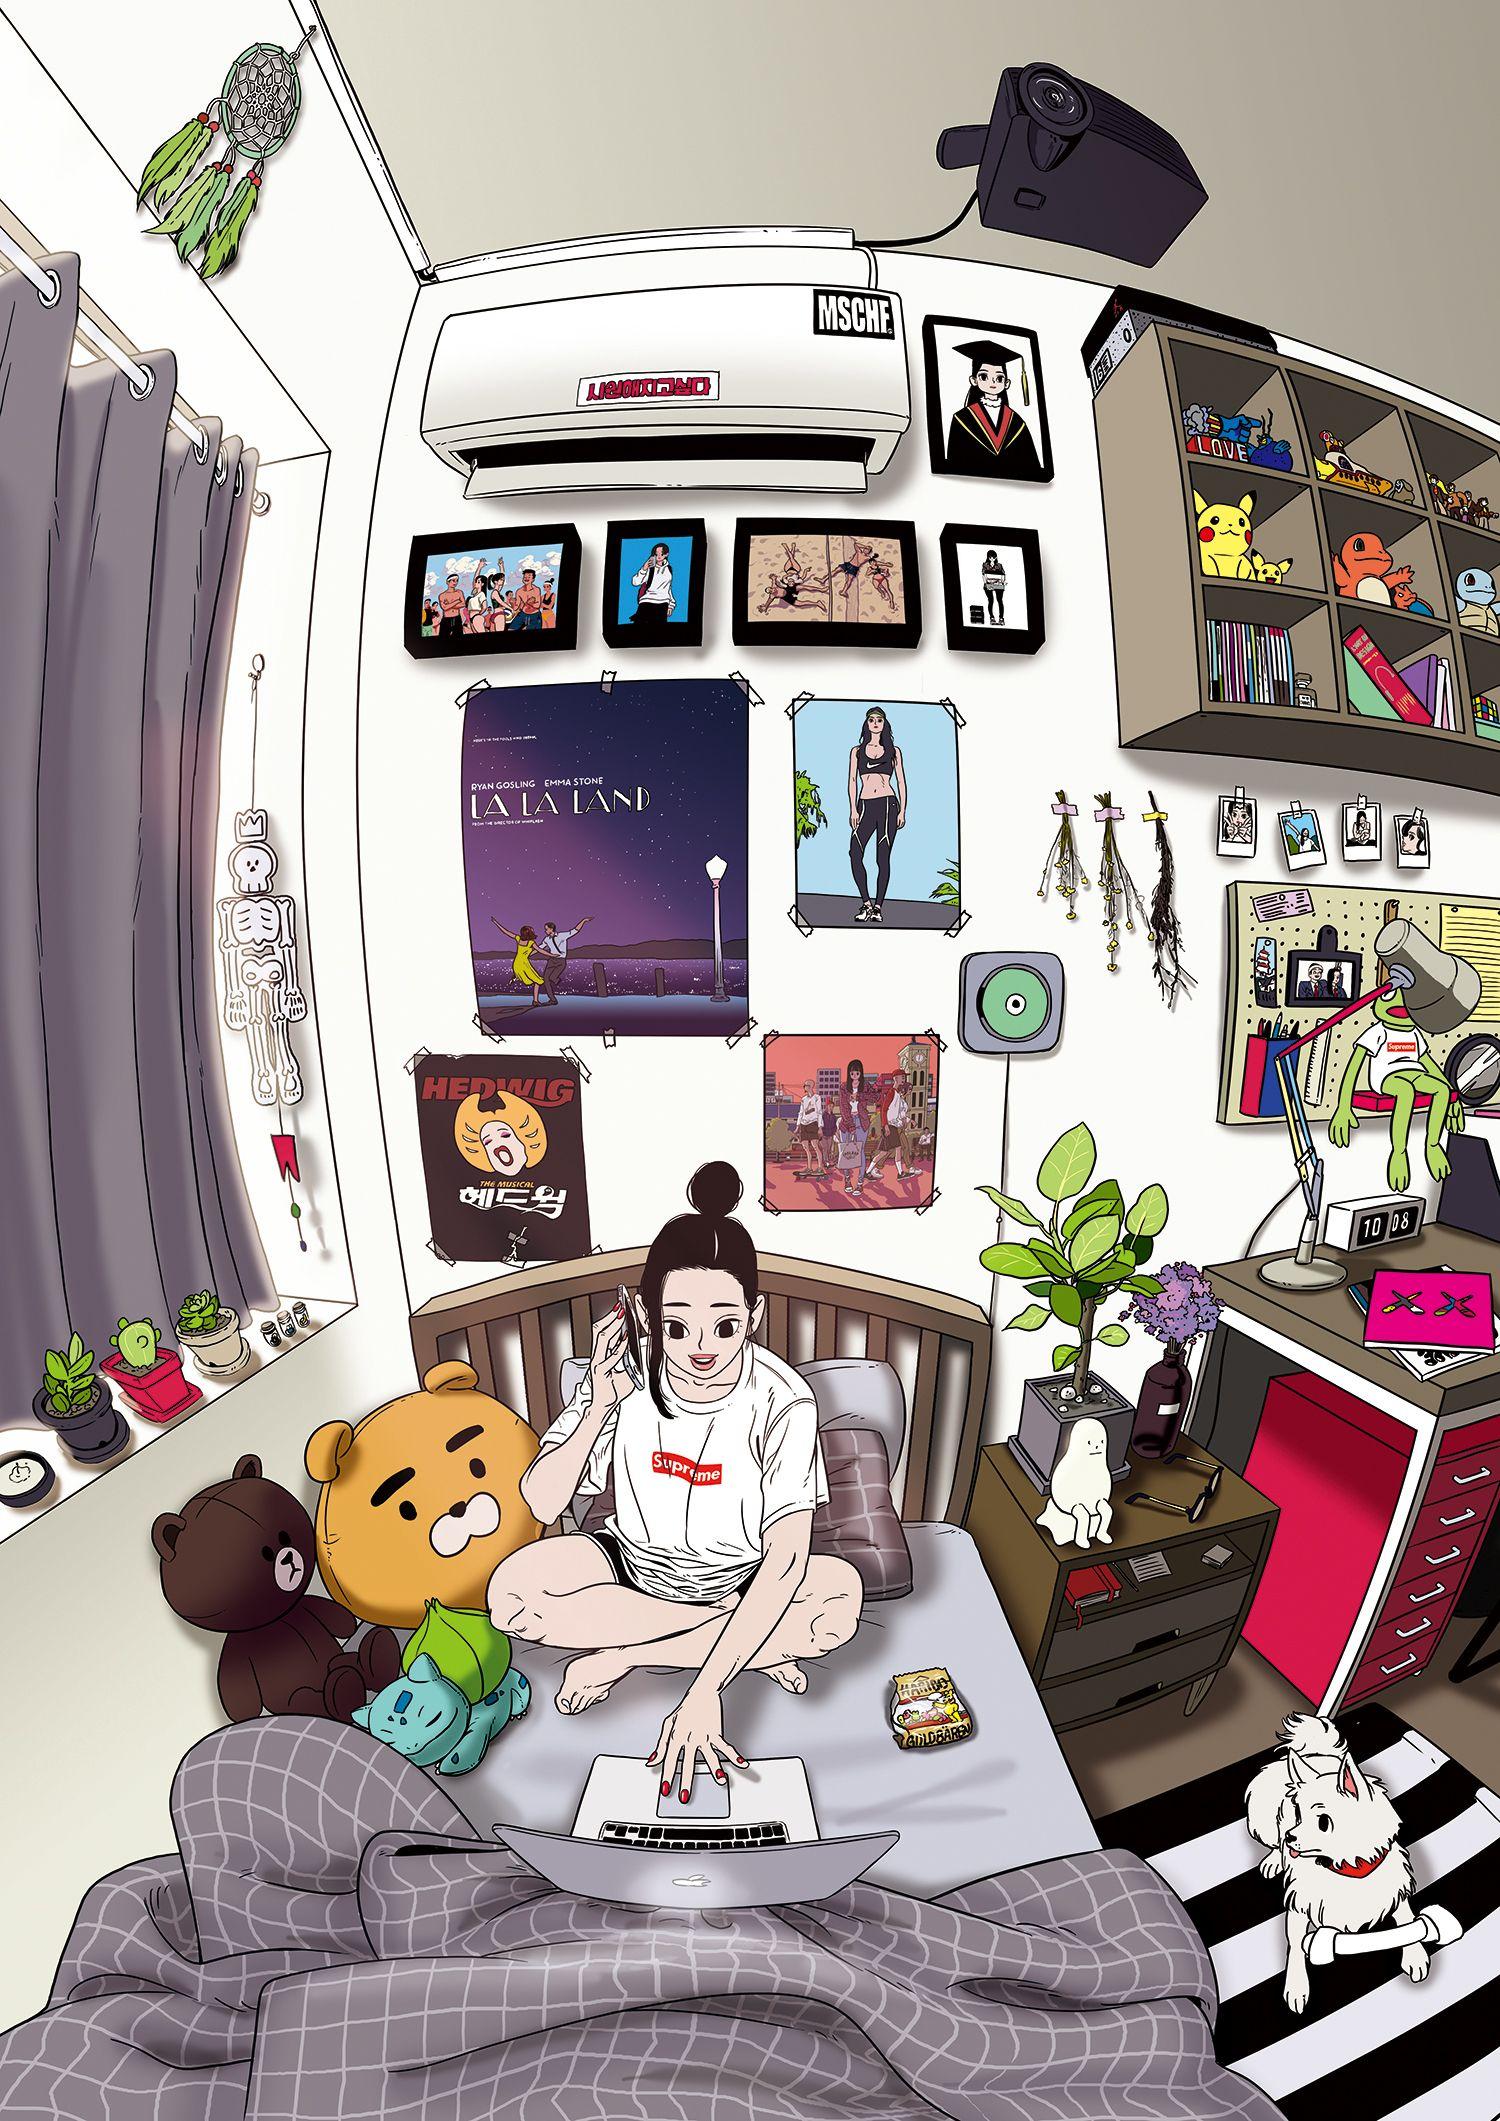 wallpaper for desktop, laptop | bj18-art-room-anime-monsters-space-night